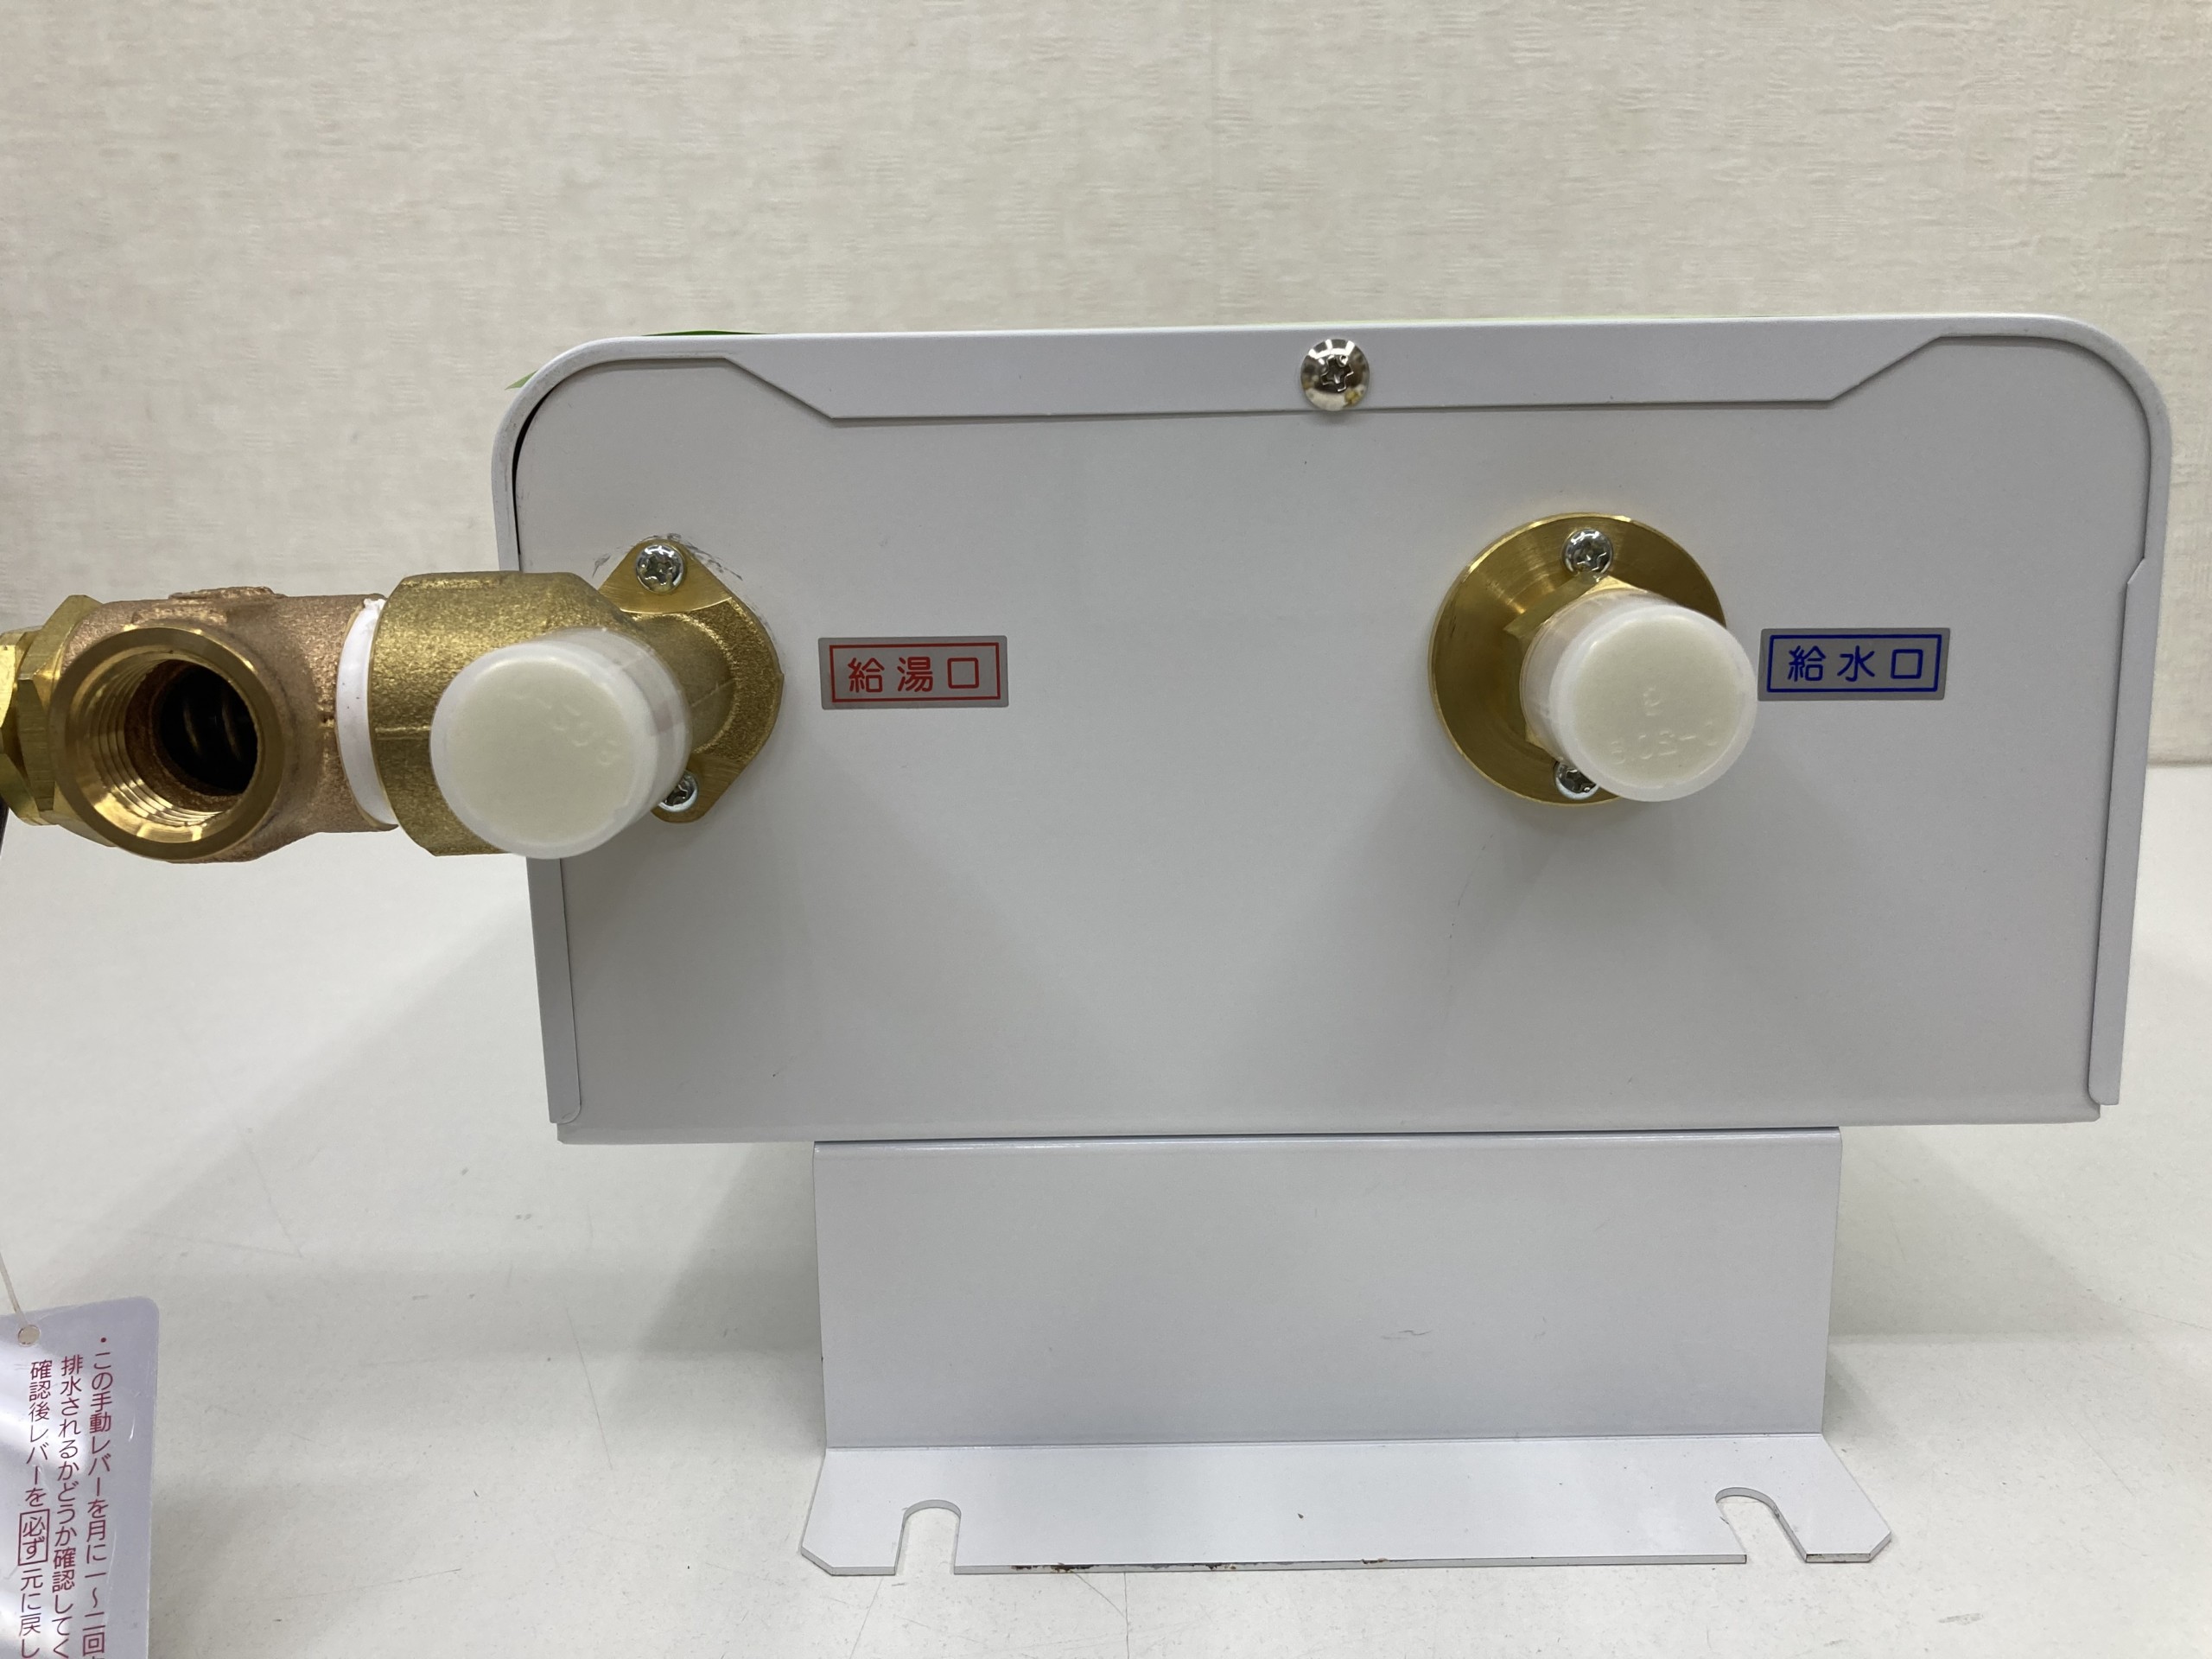 イトミック iTomic 電気瞬間湯沸器 DE-15N1(1) 三相 200V 電気温水器